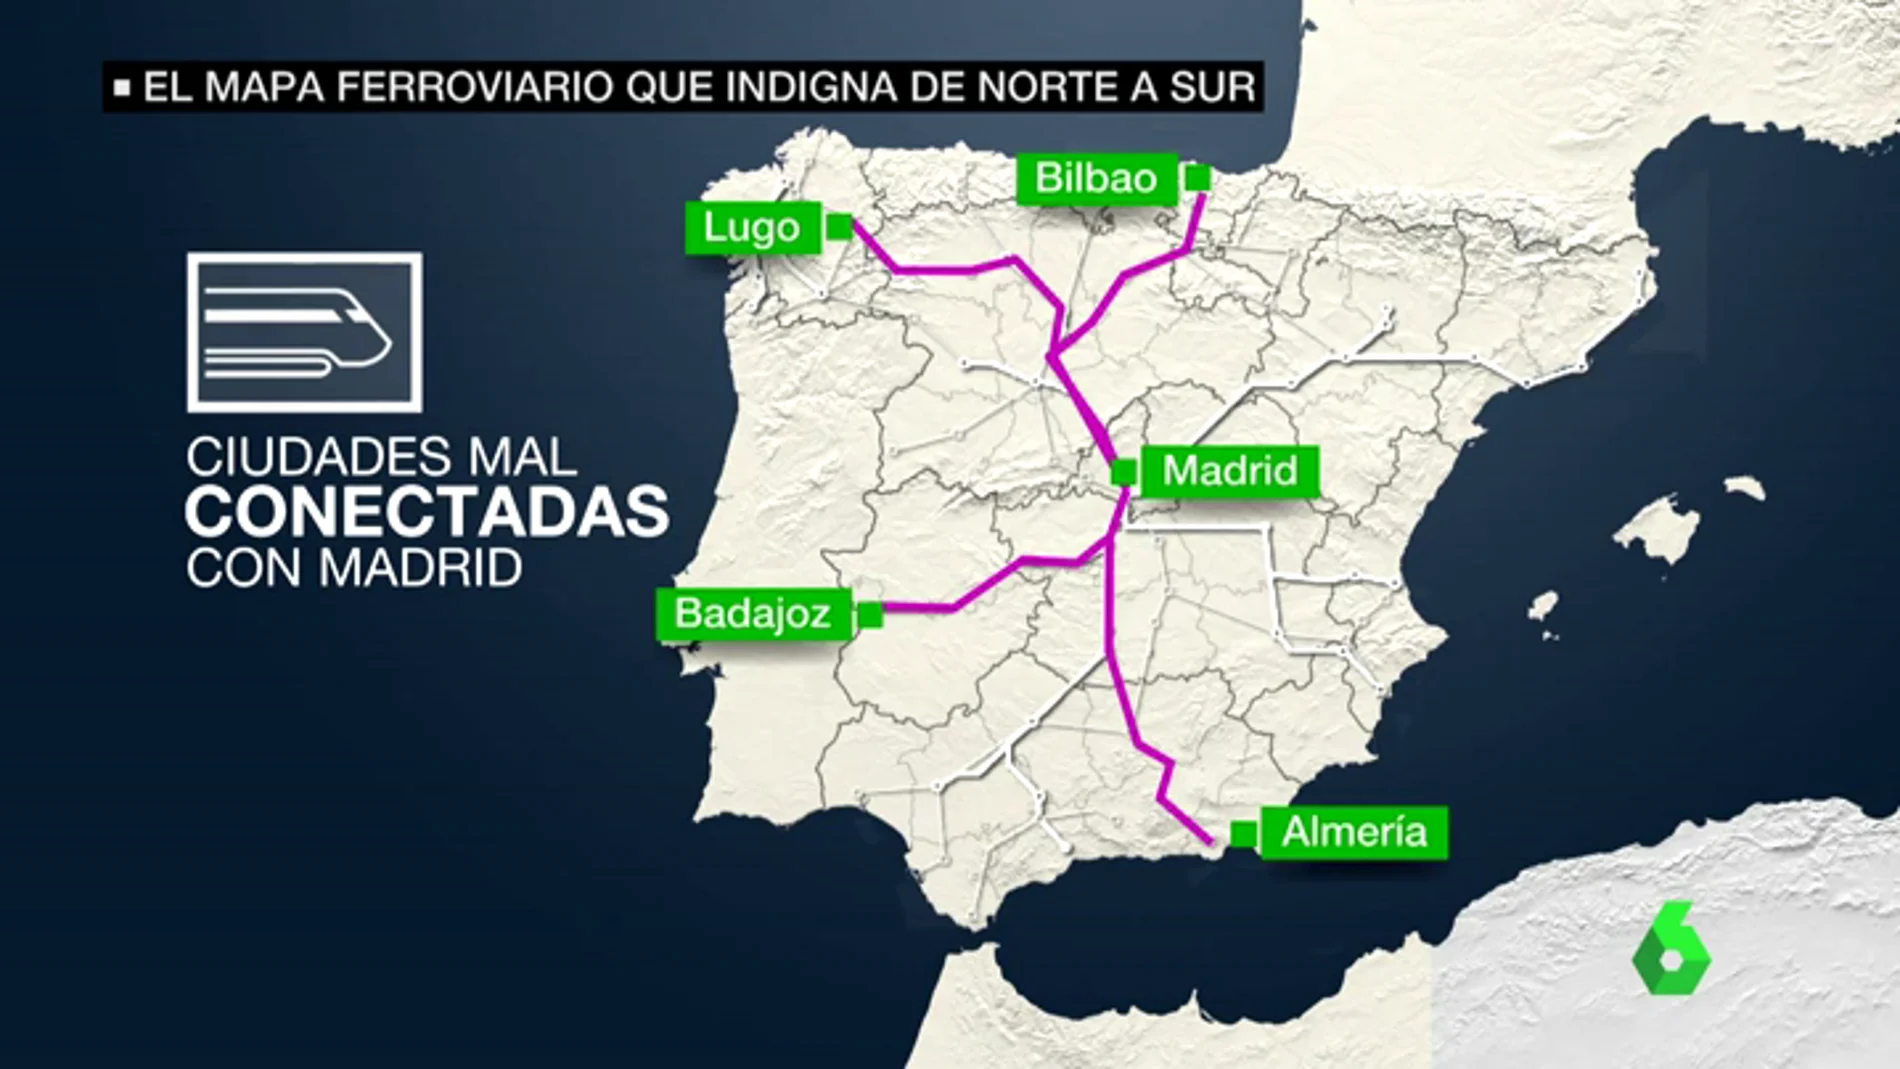 El mapa ferroviario de España indigna a viajeros de toda la Península 